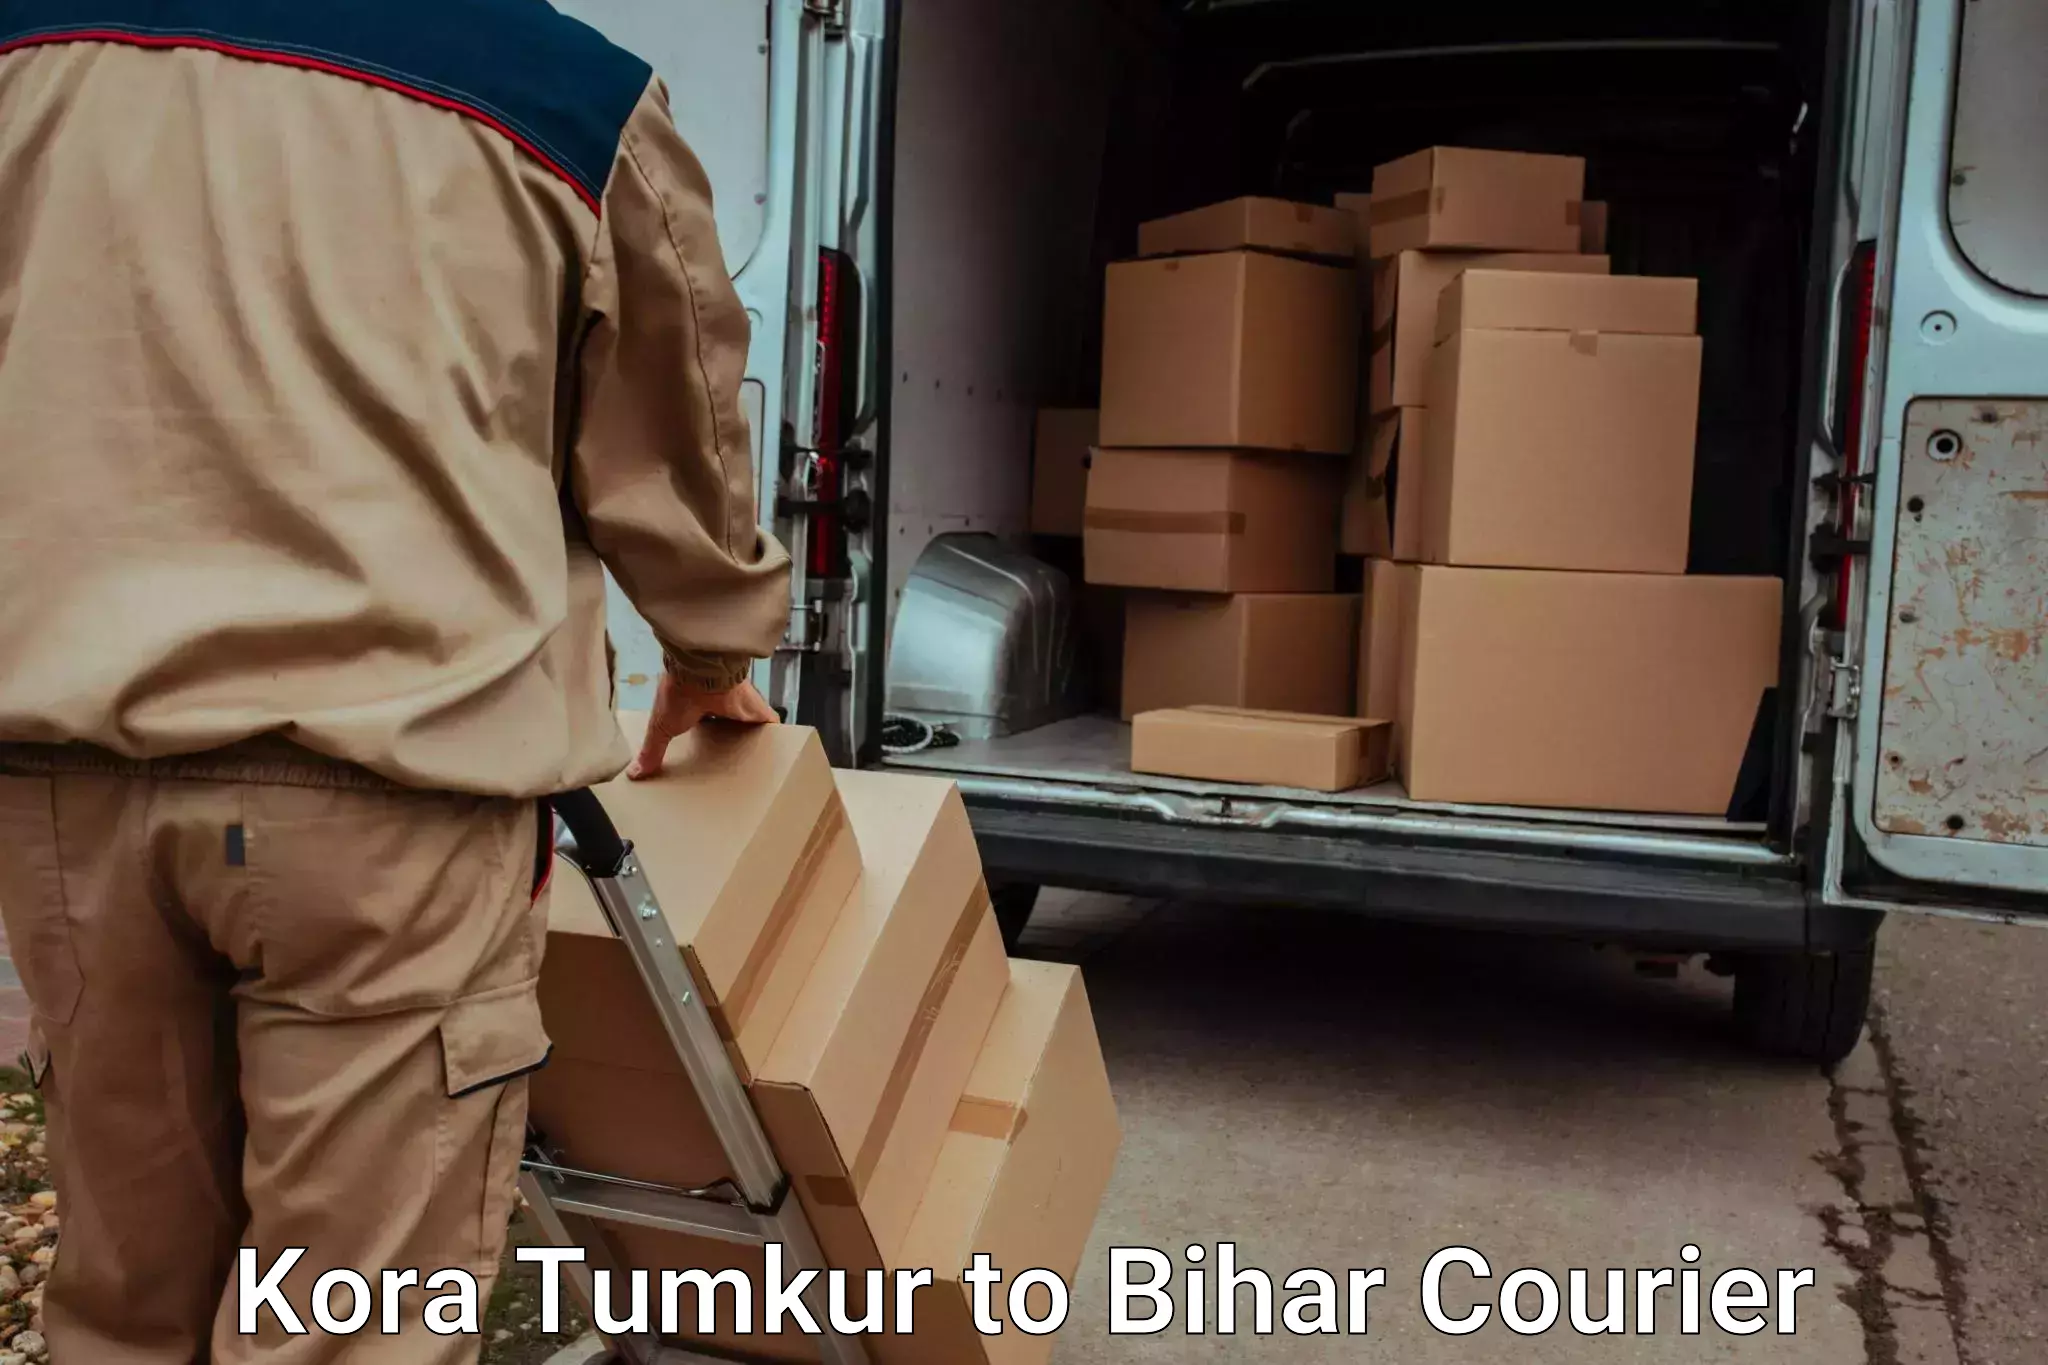 Reliable movers Kora Tumkur to Baniapur